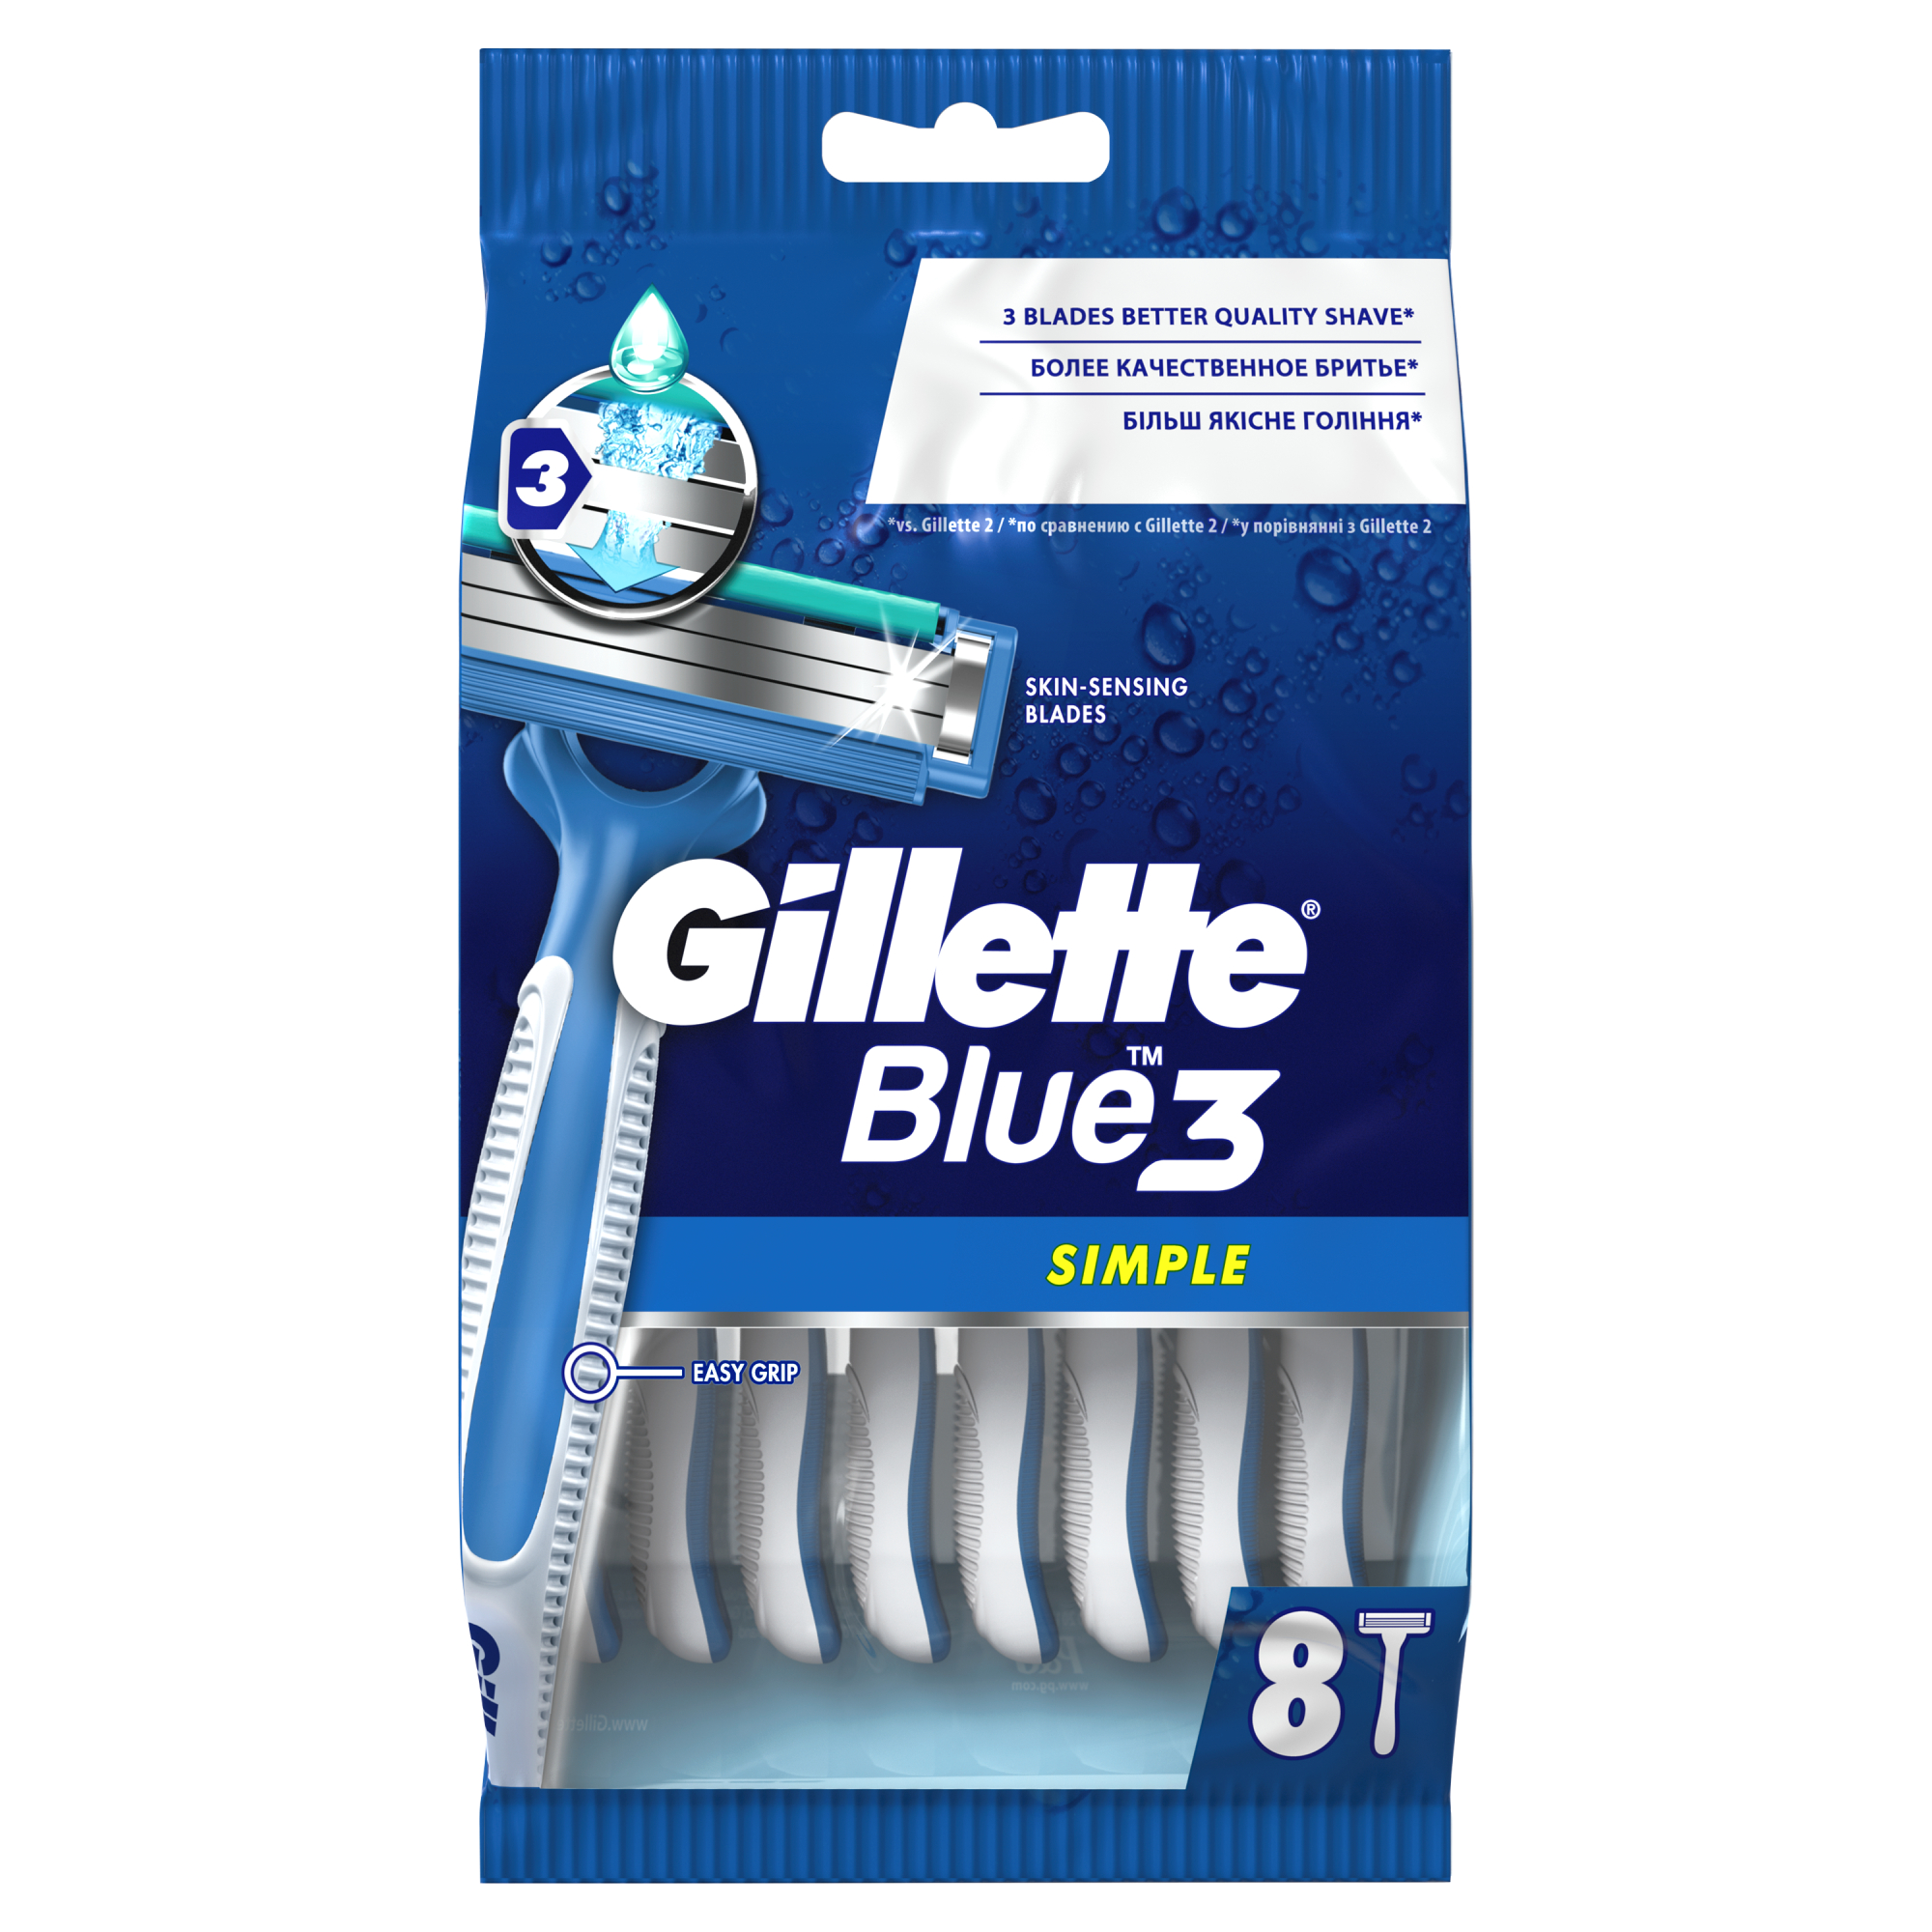 Одноразовые мужские бритвы Gillette Blue3 Simple, с 3 лезвиями, 8, фиксированная головка пластическое мышление в живописи архитектуре кино и фотографии